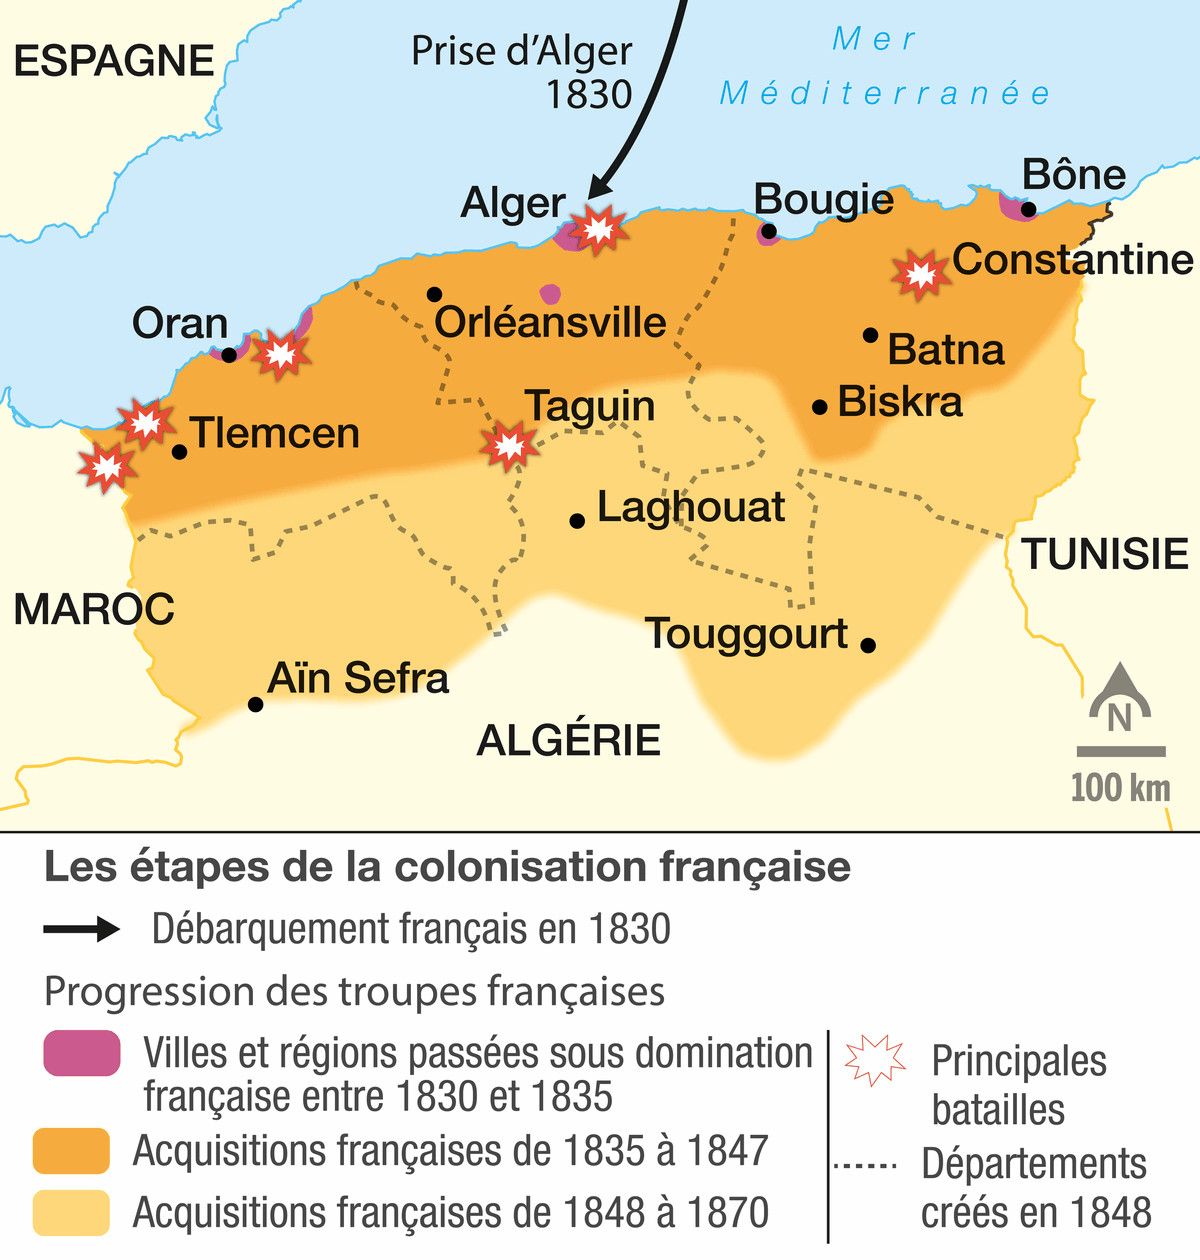 Les étapes de la conquête de l'Algérie